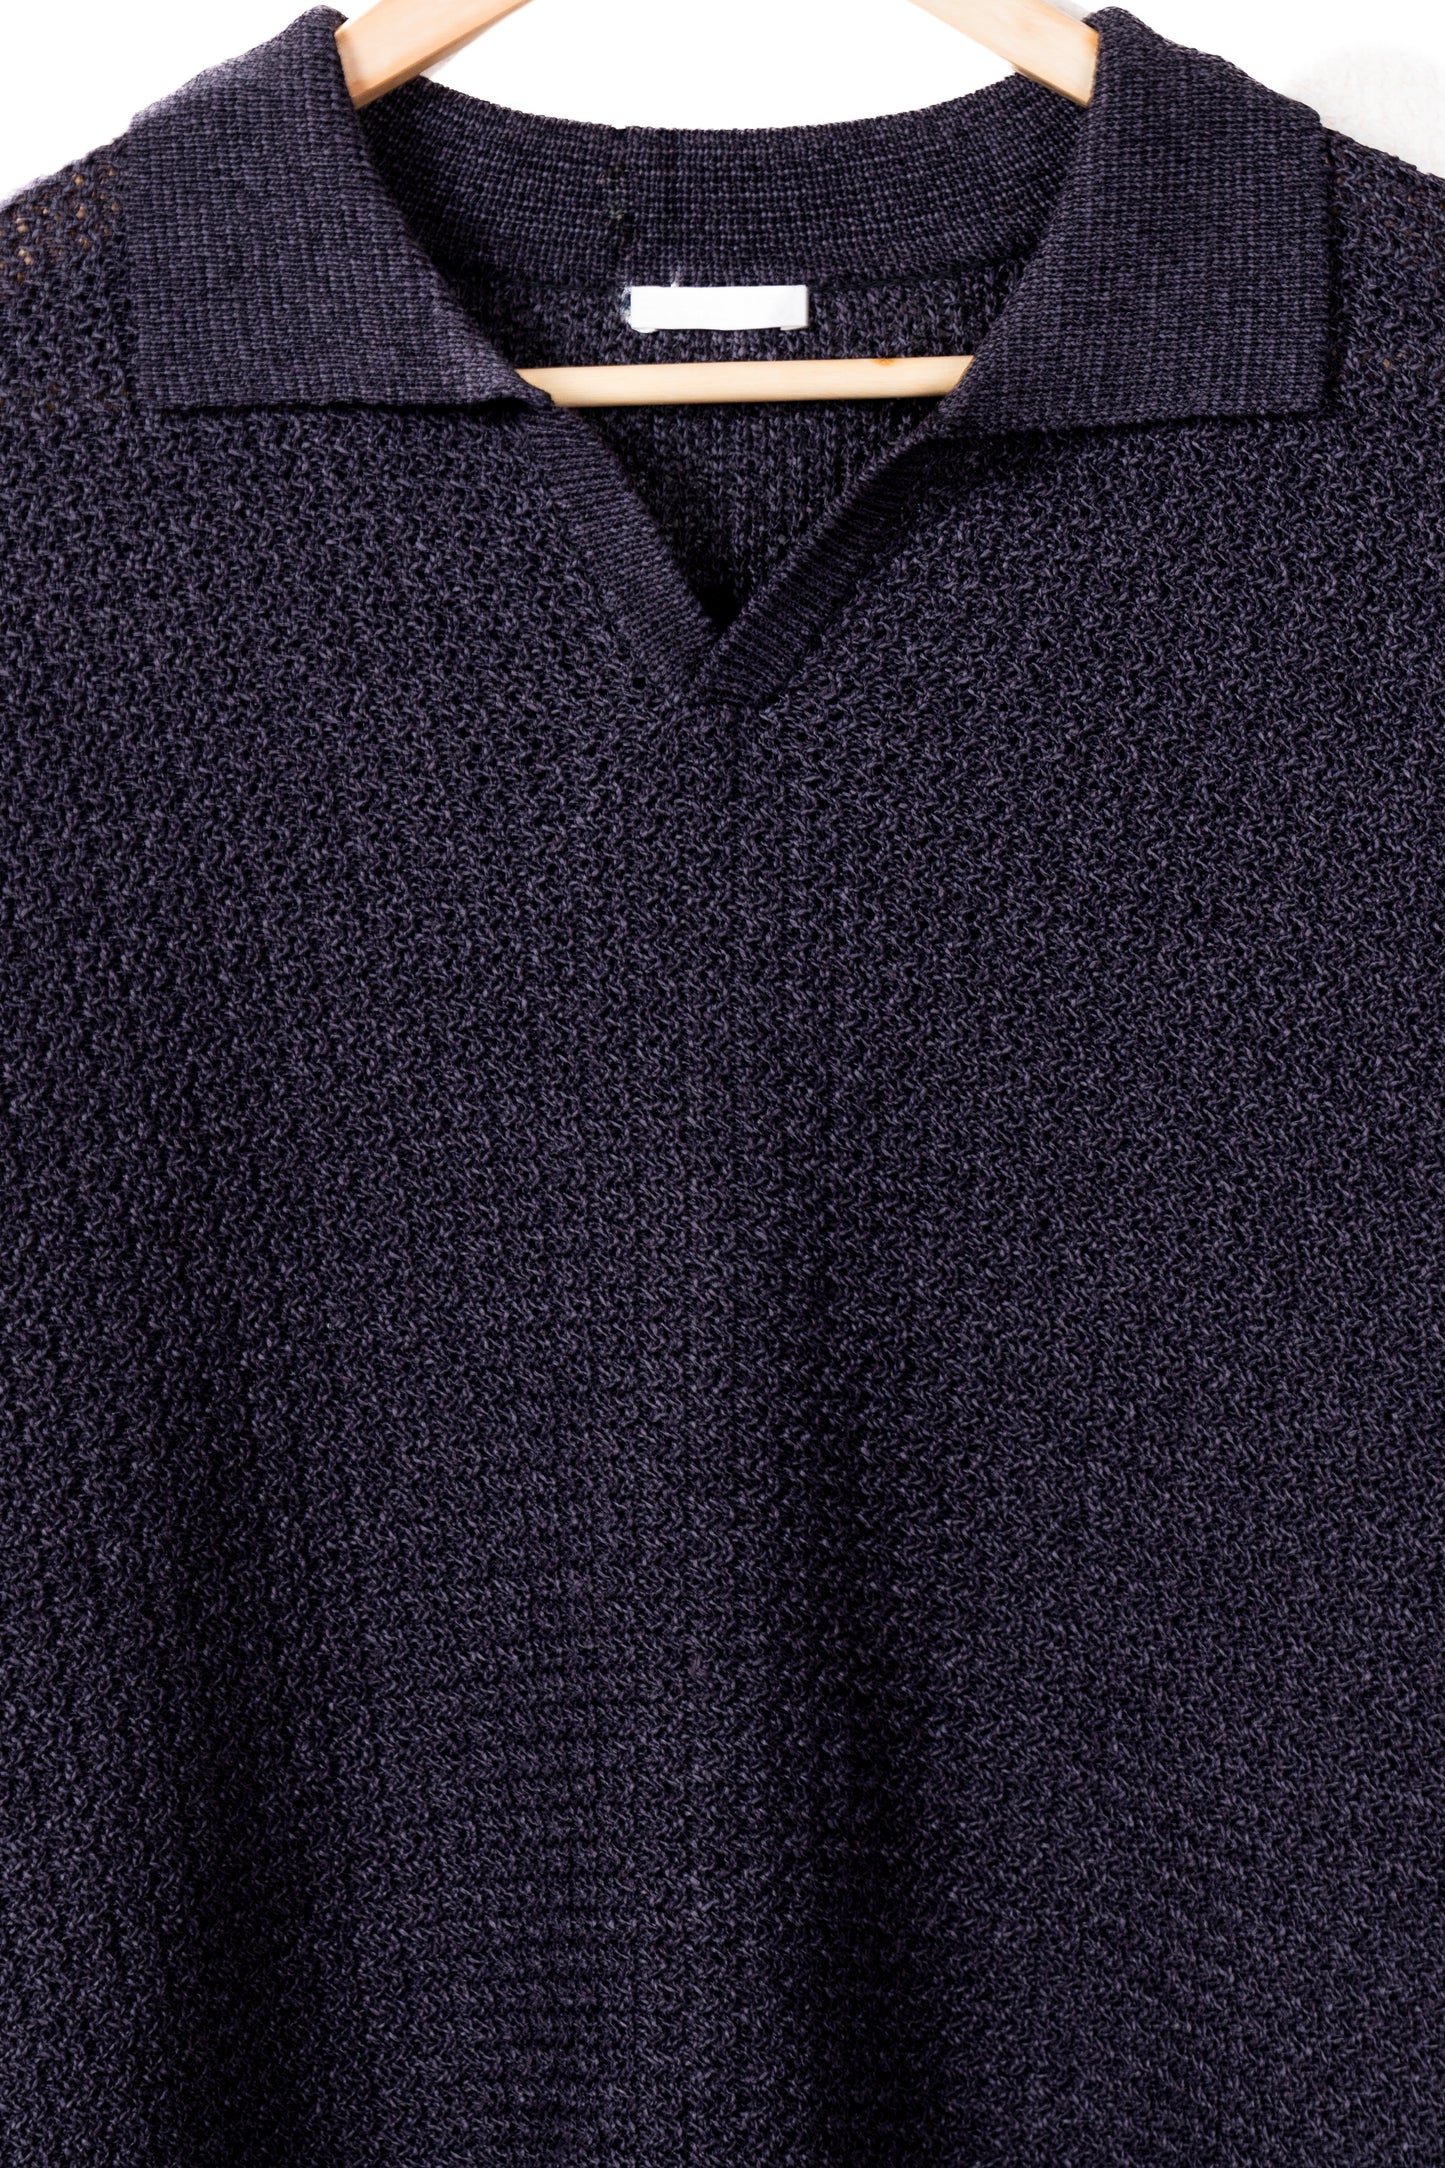 Skipper knit Shirt